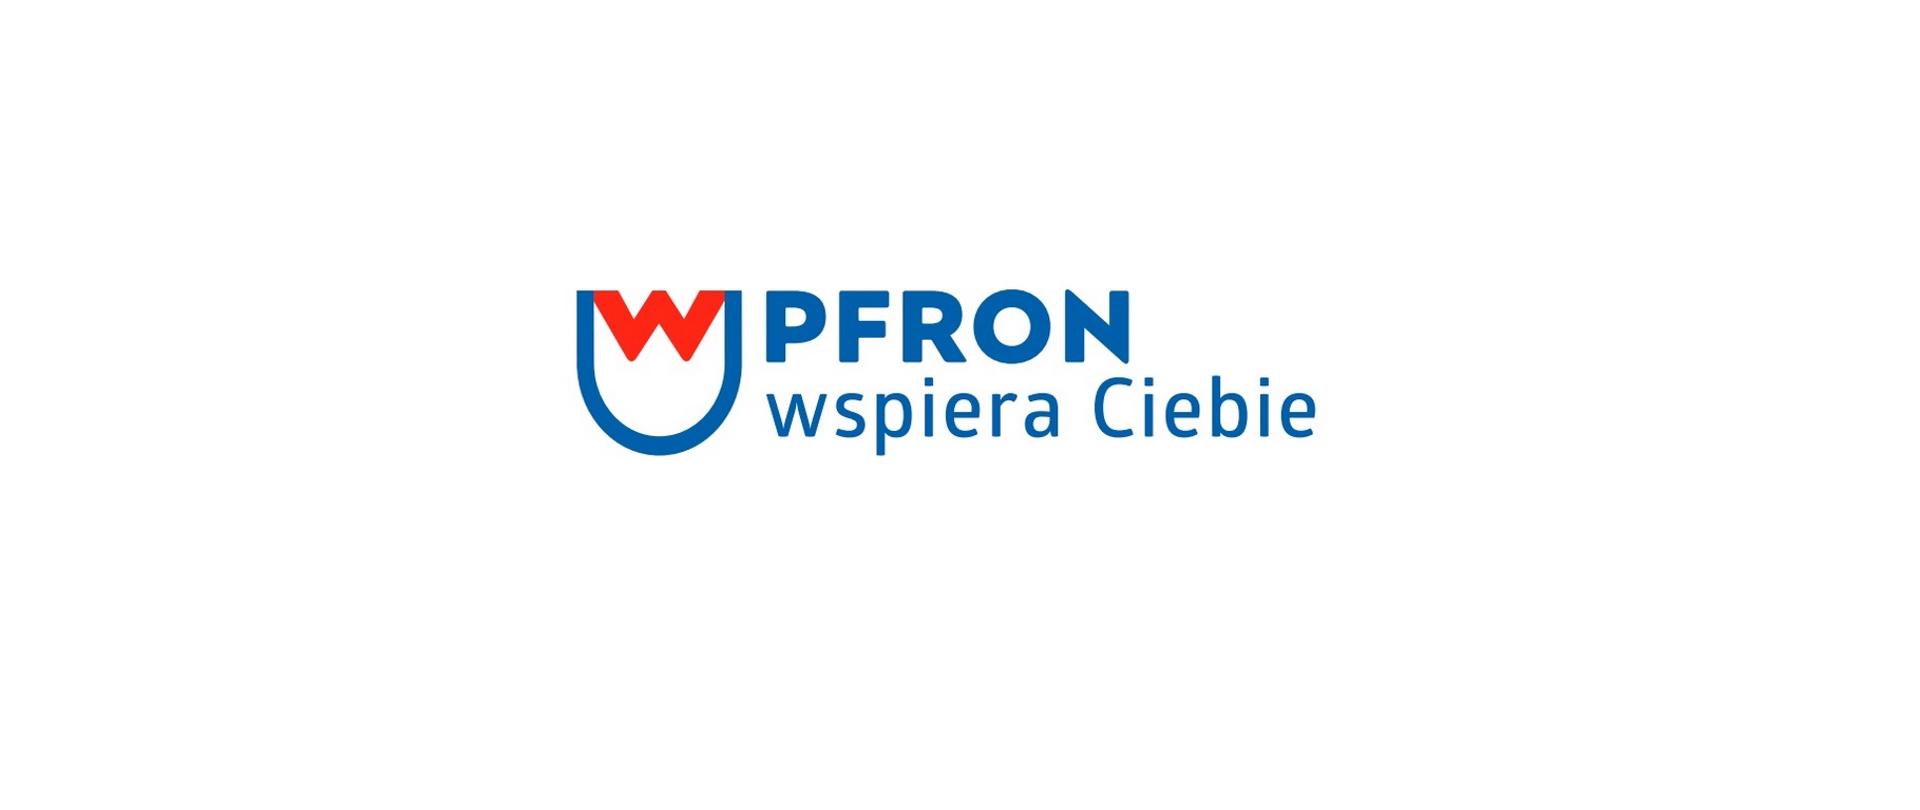 Logo PFRON wspiera ciebie